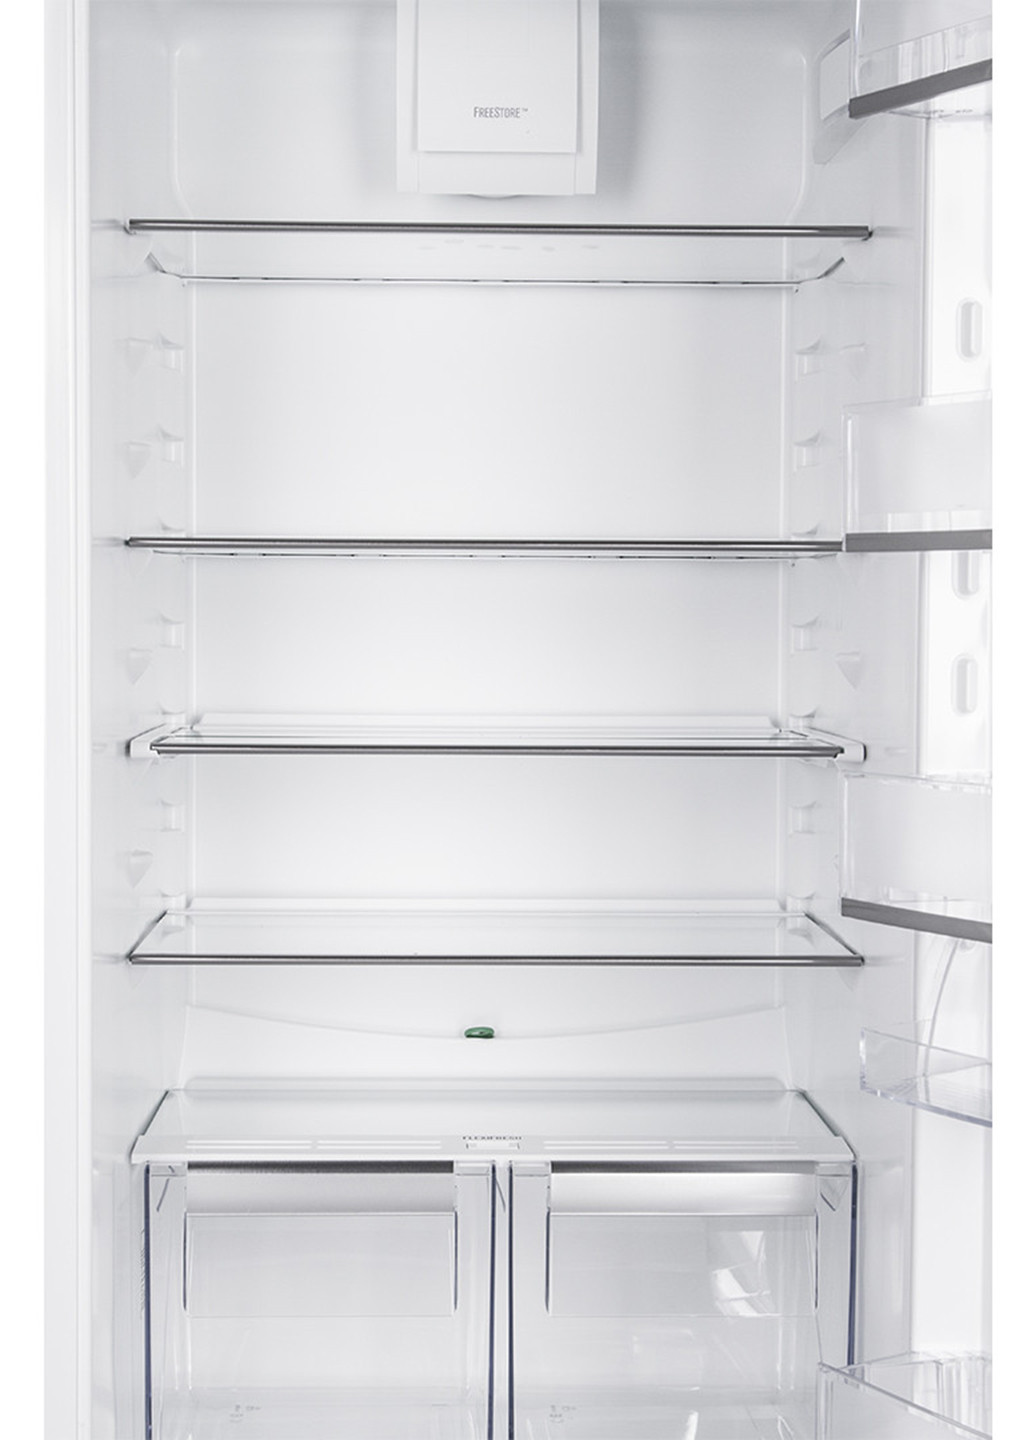 Холодильник Electrolux enn92853cw (133777659)